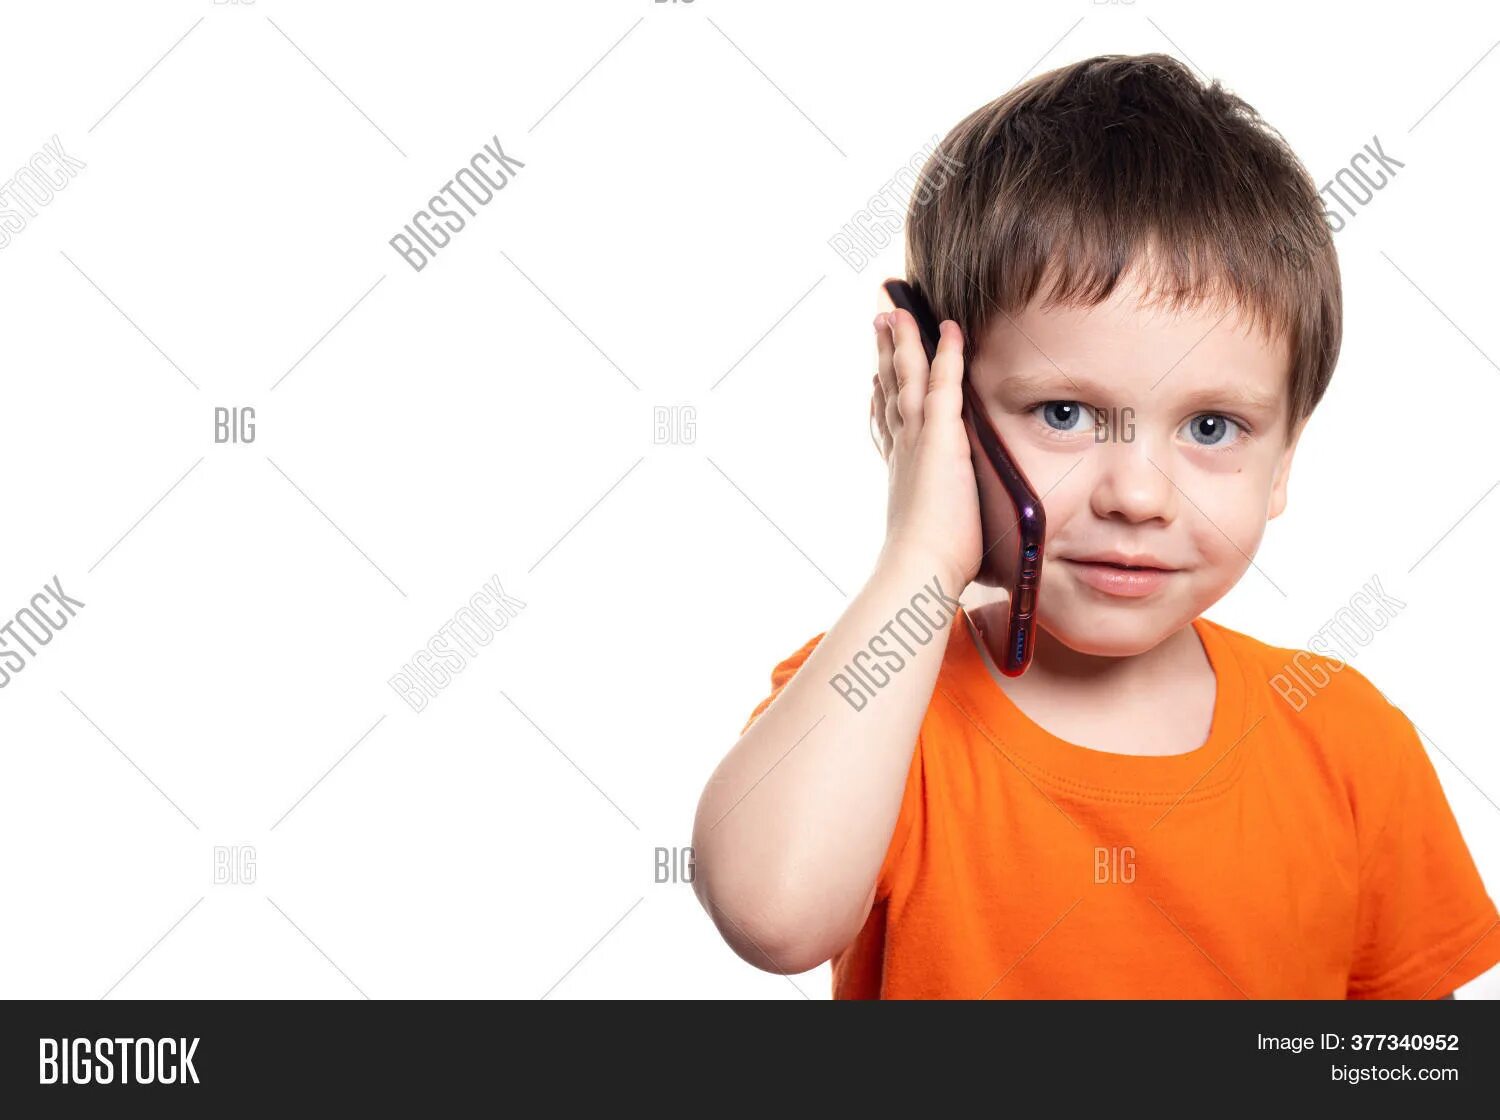 Телефон мальчик 6. Мальчик с телефоном. Мальчик говорит по телефону. Маленький мальчик со смартфоном. Мальчик с телефоном на белом фоне.